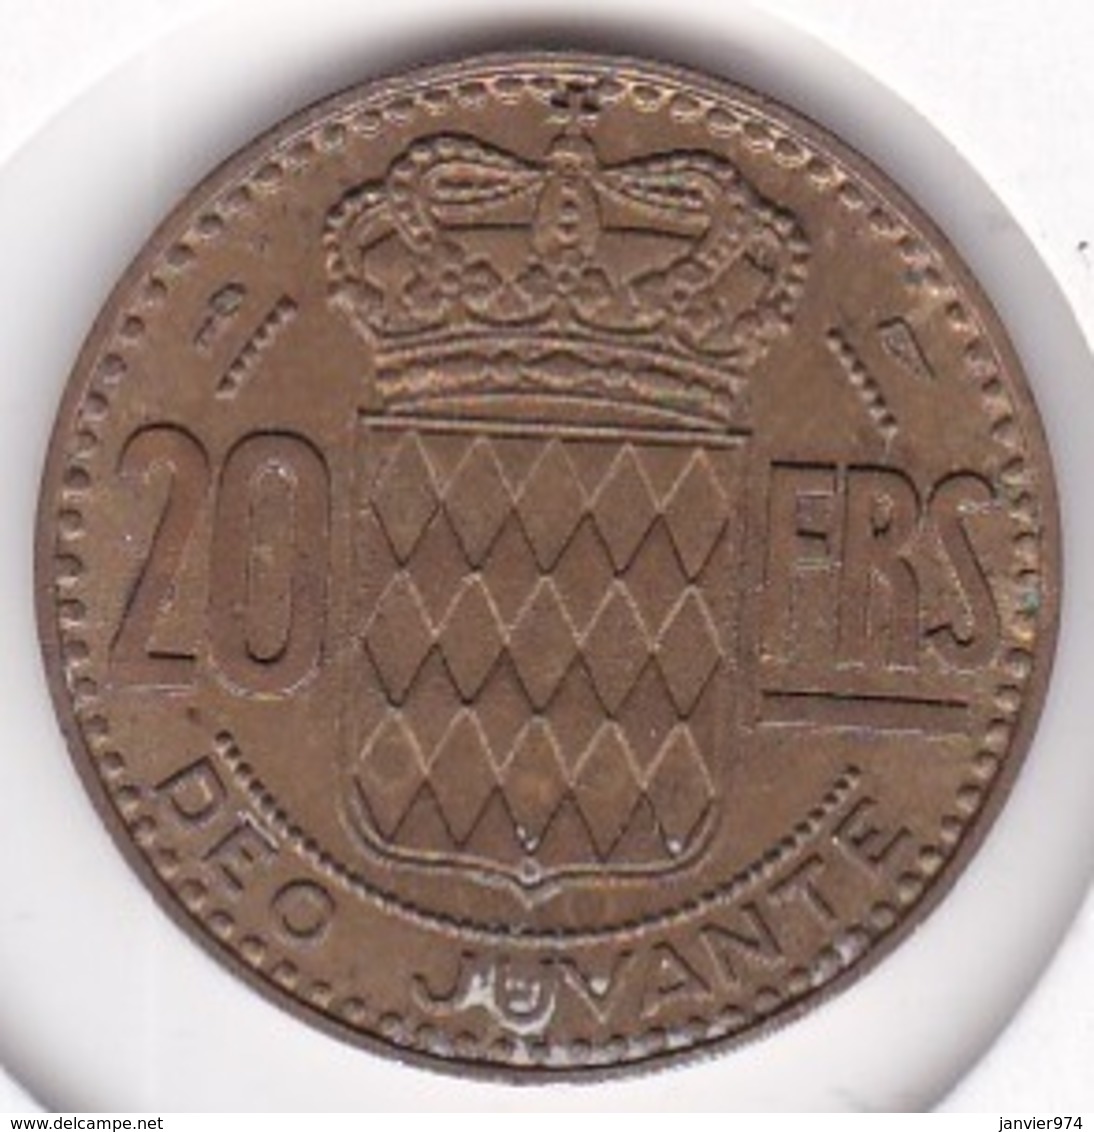 MONACO. 20 FRANCS 1950 . RAINIER III - 1949-1956 Anciens Francs